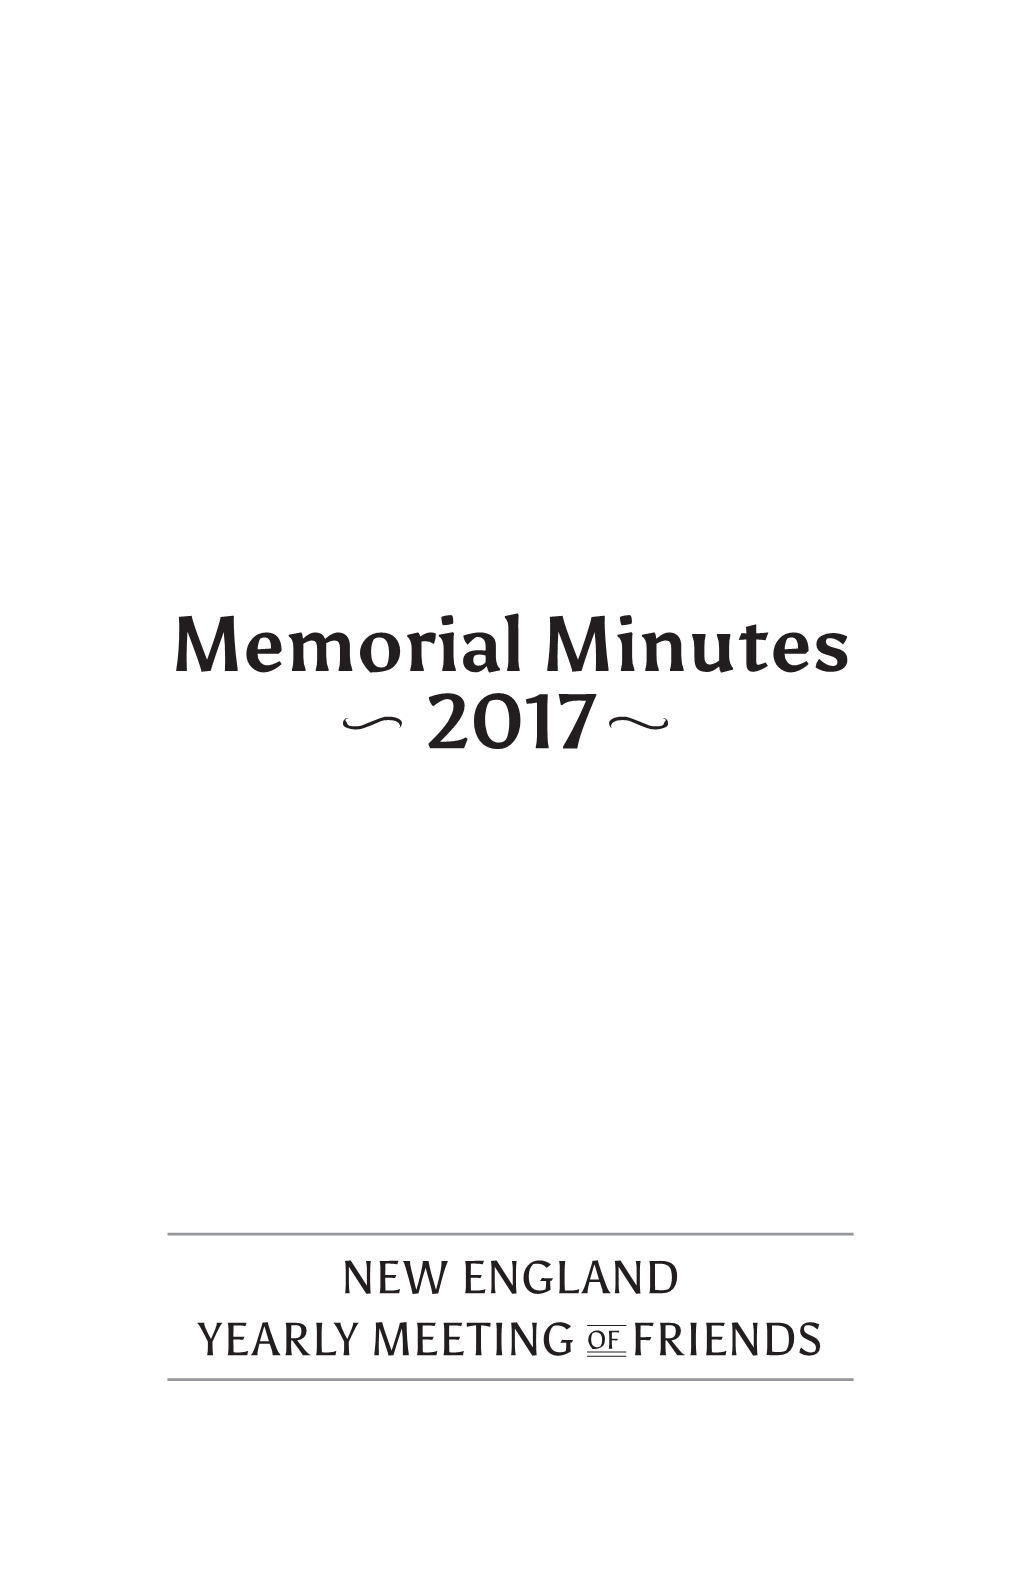 Memorial Minutes 2017